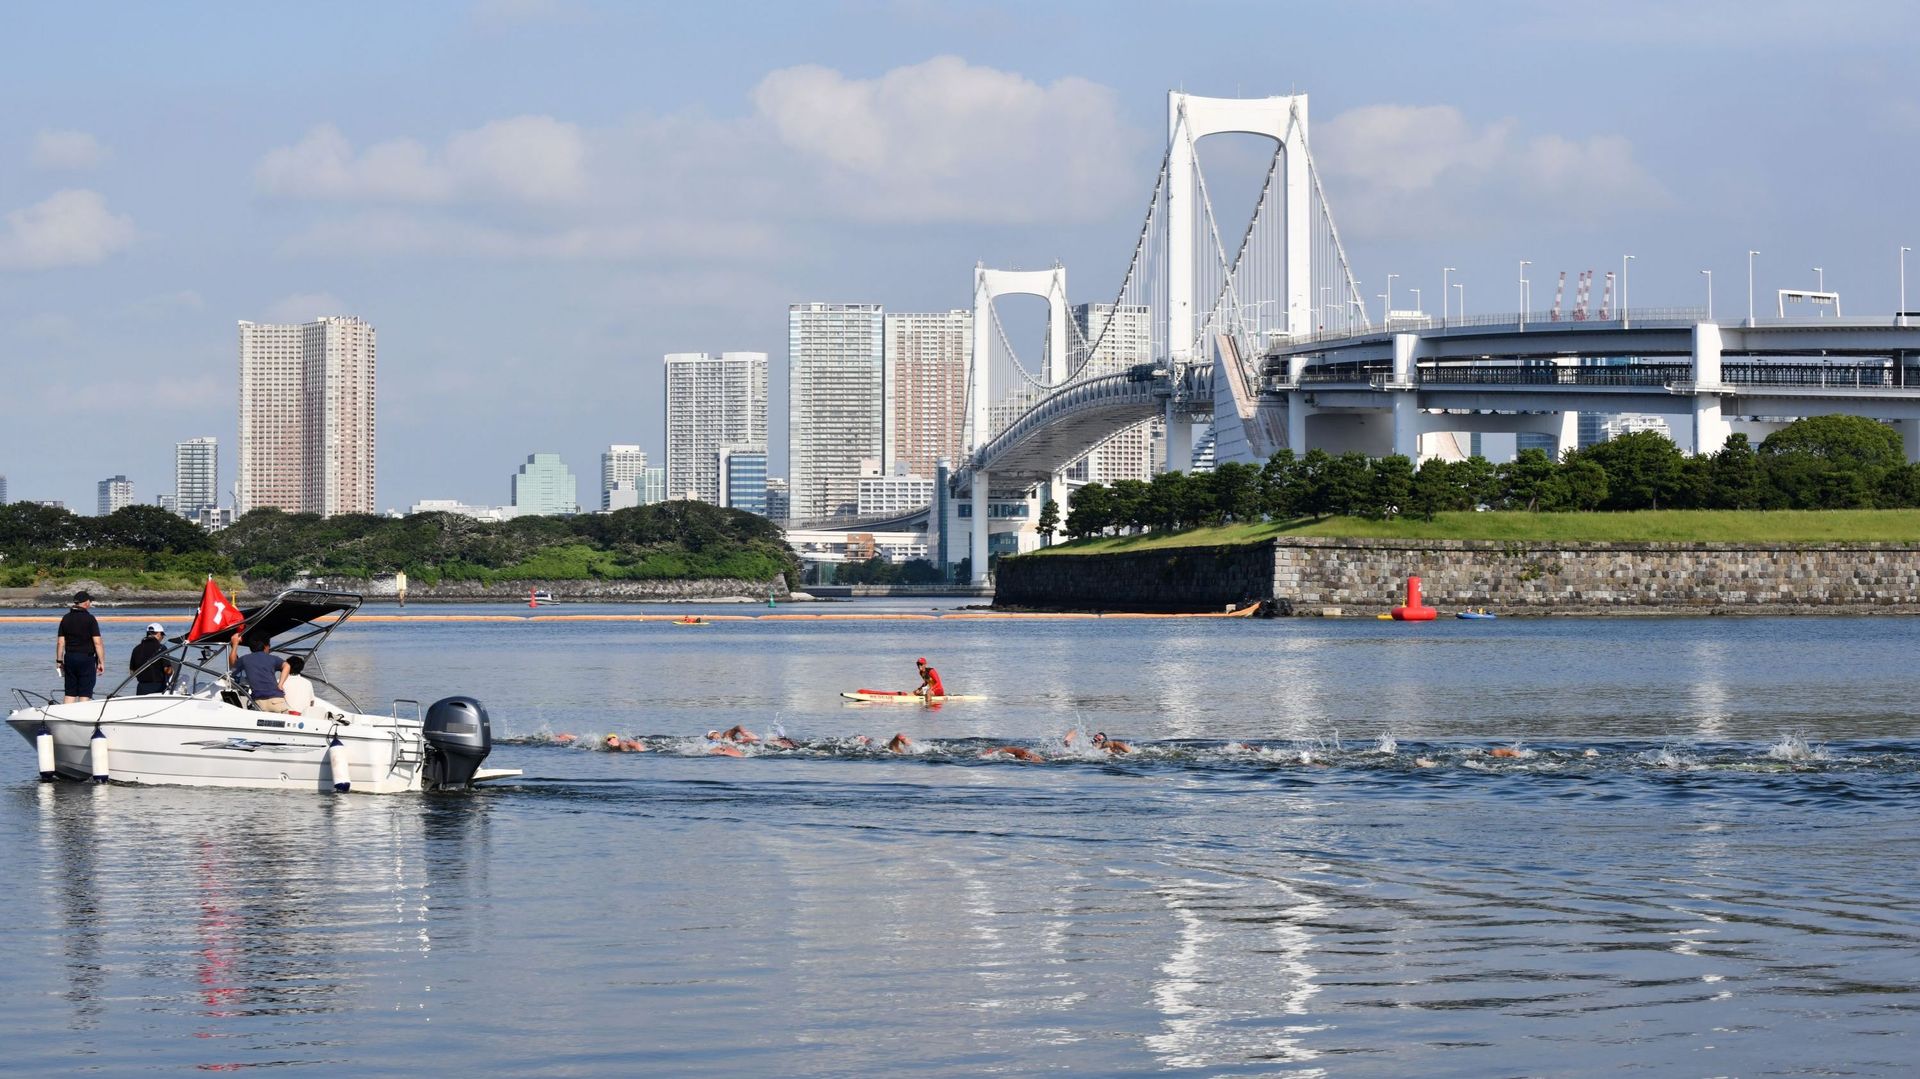 FINA et nageurs s'inquiètent de la qualité et la température de l'eau dans la baie à Tokyo